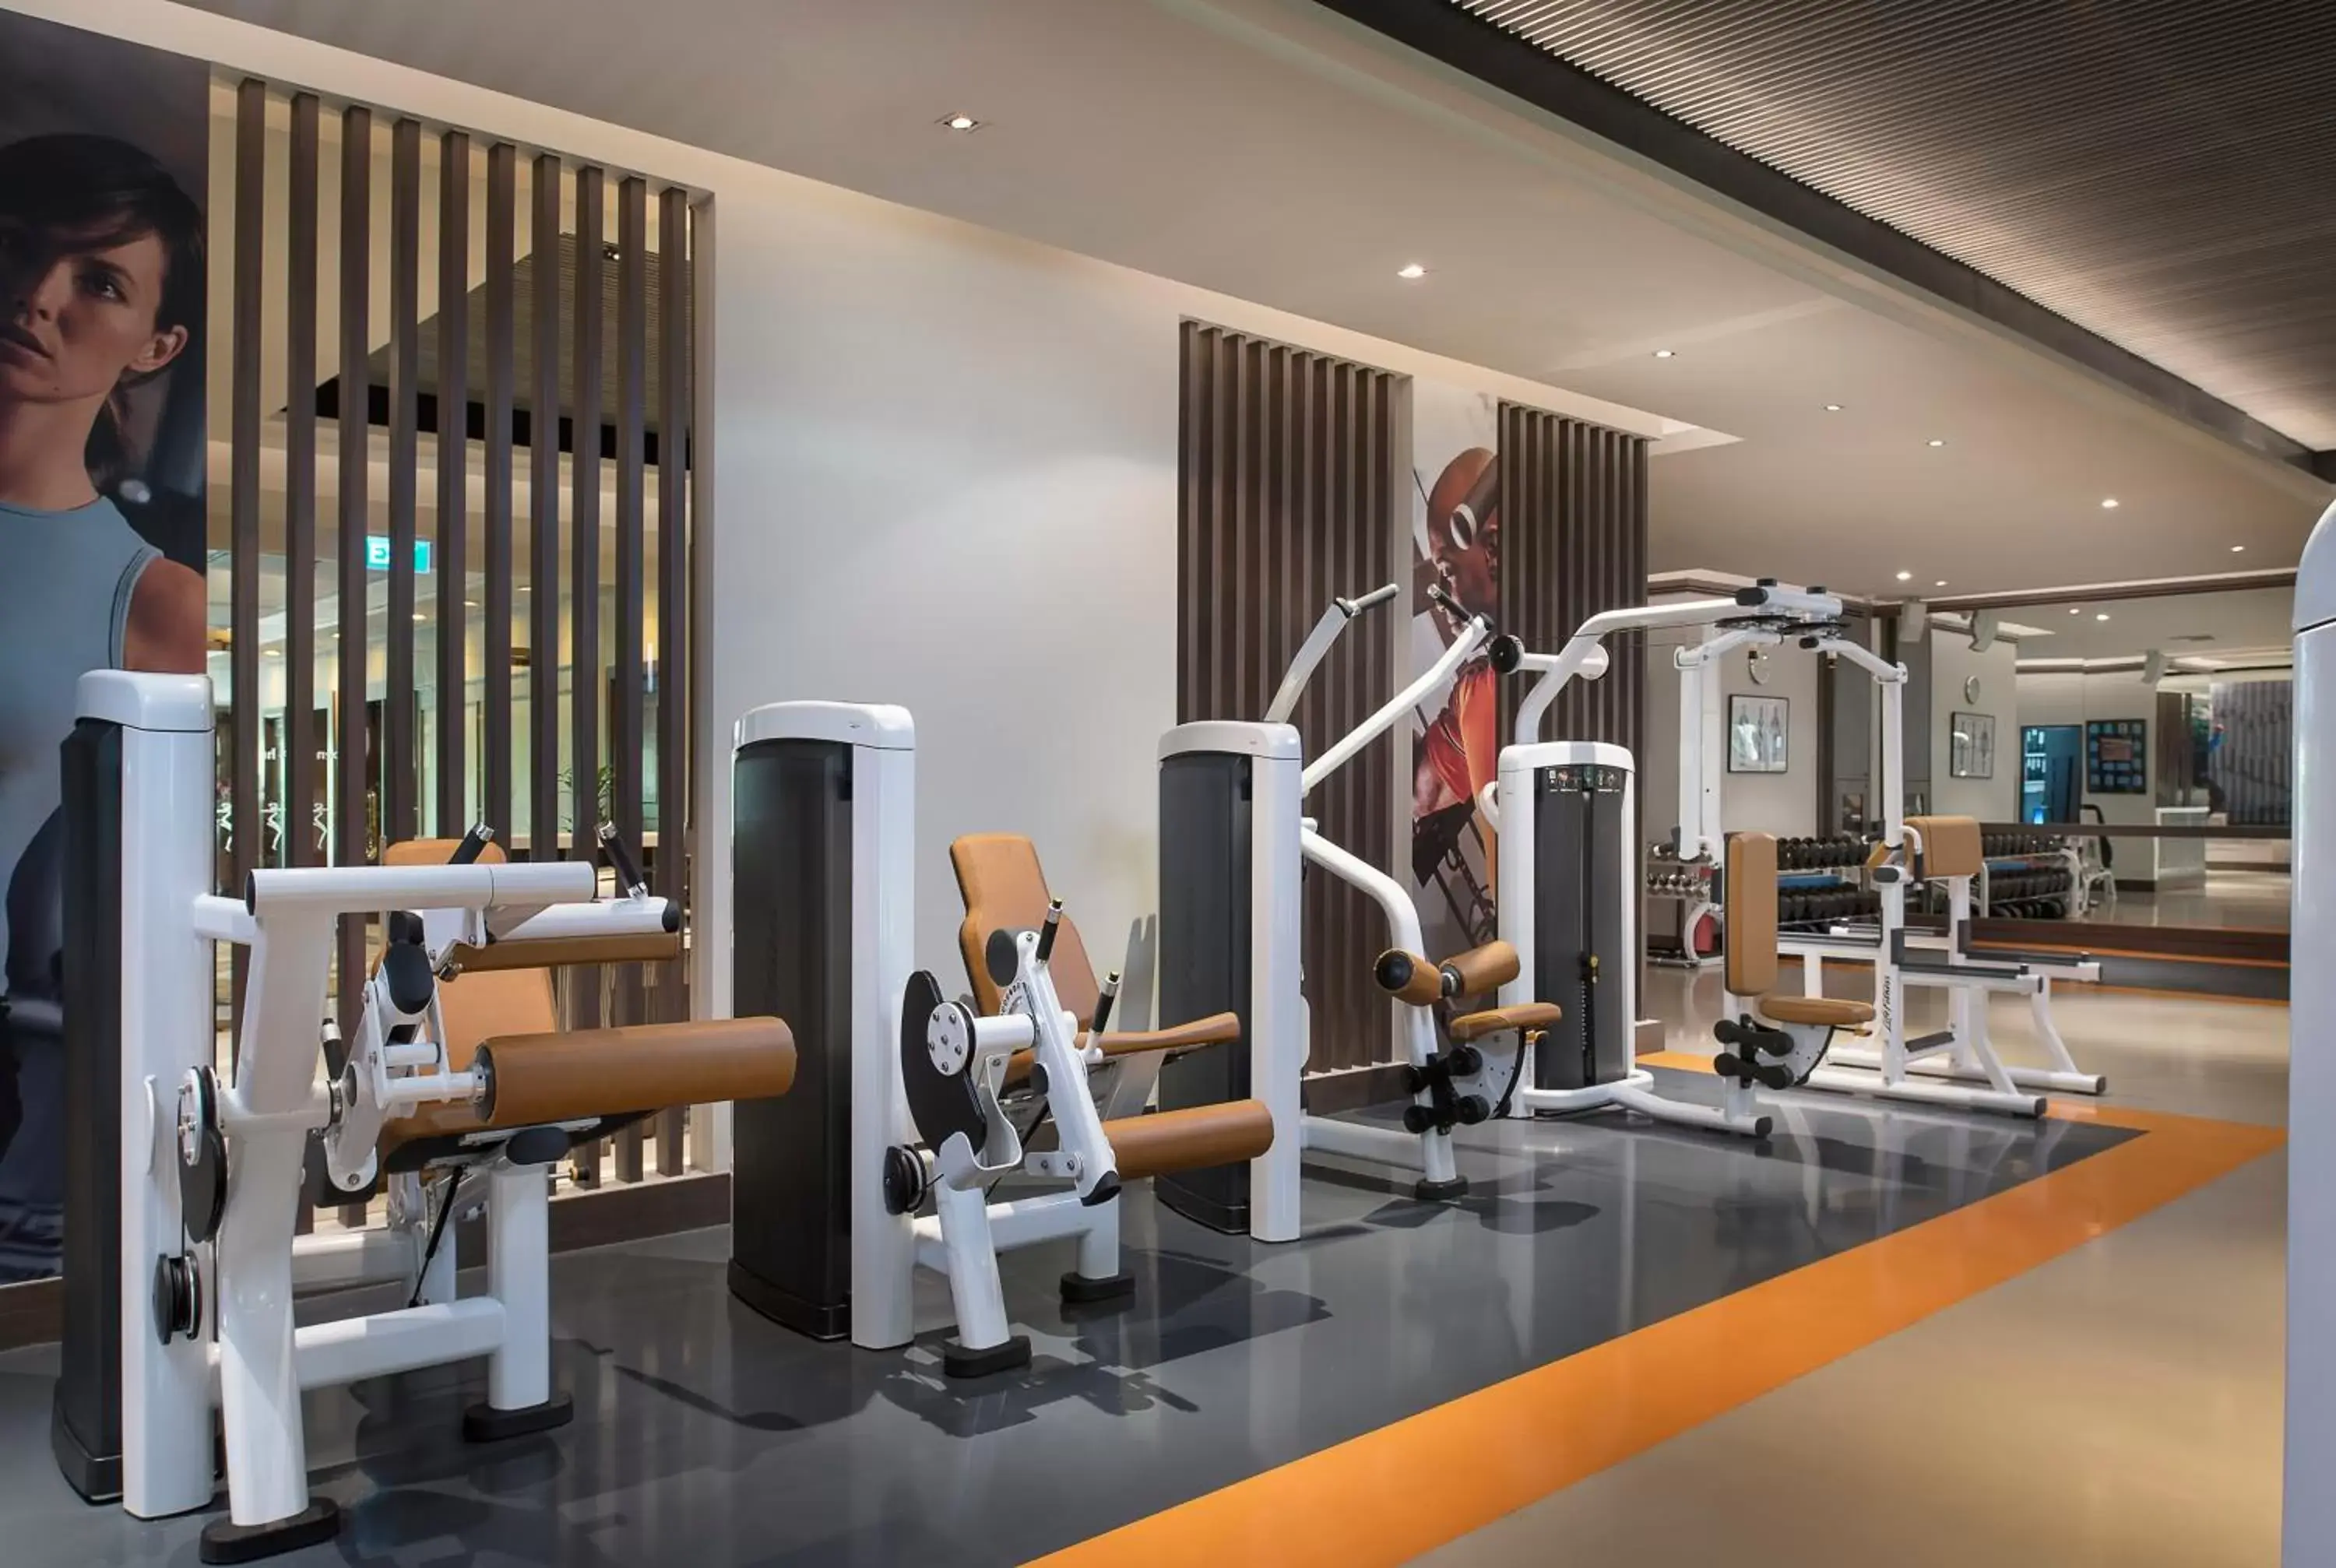 Fitness centre/facilities, Fitness Center/Facilities in Anantara Riverside Bangkok Resort